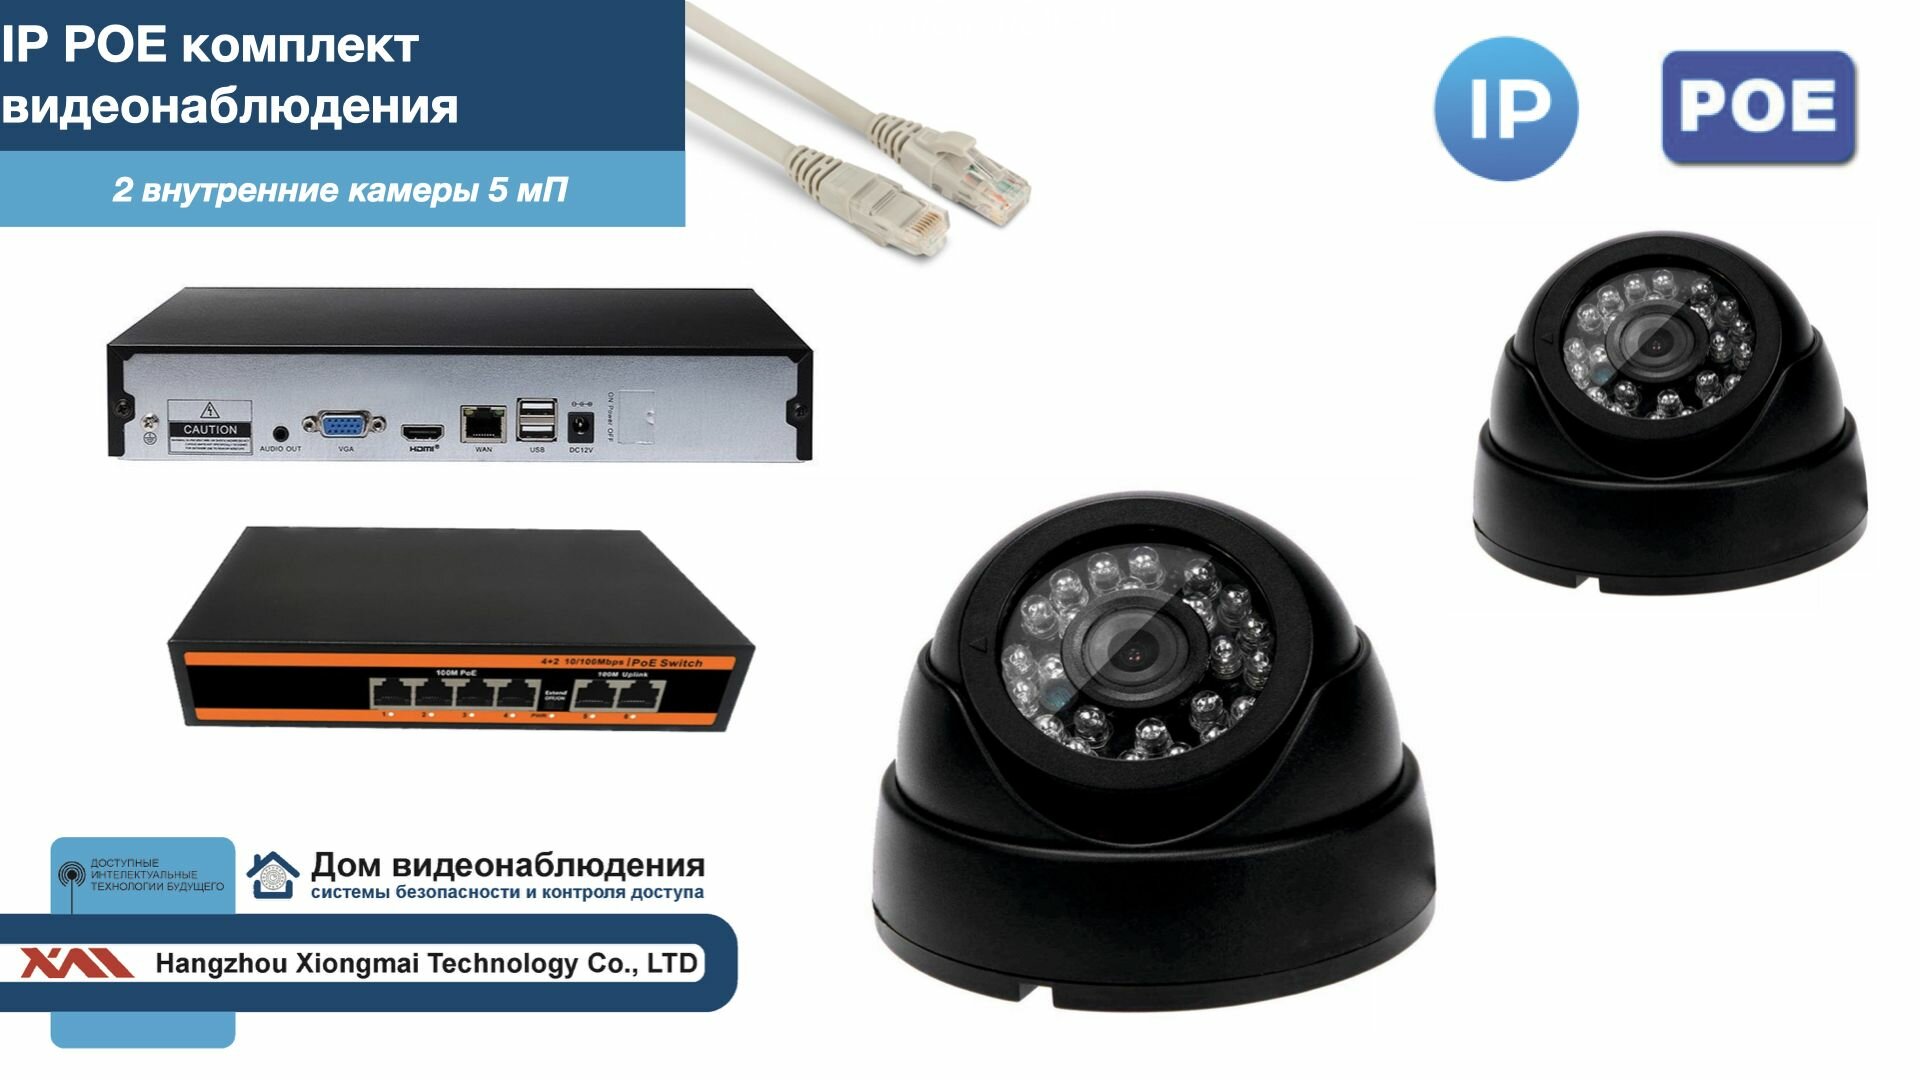 Полный IP POE комплект видеонаблюдения на 2 камеры (KIT2IPPOE300B5MP)